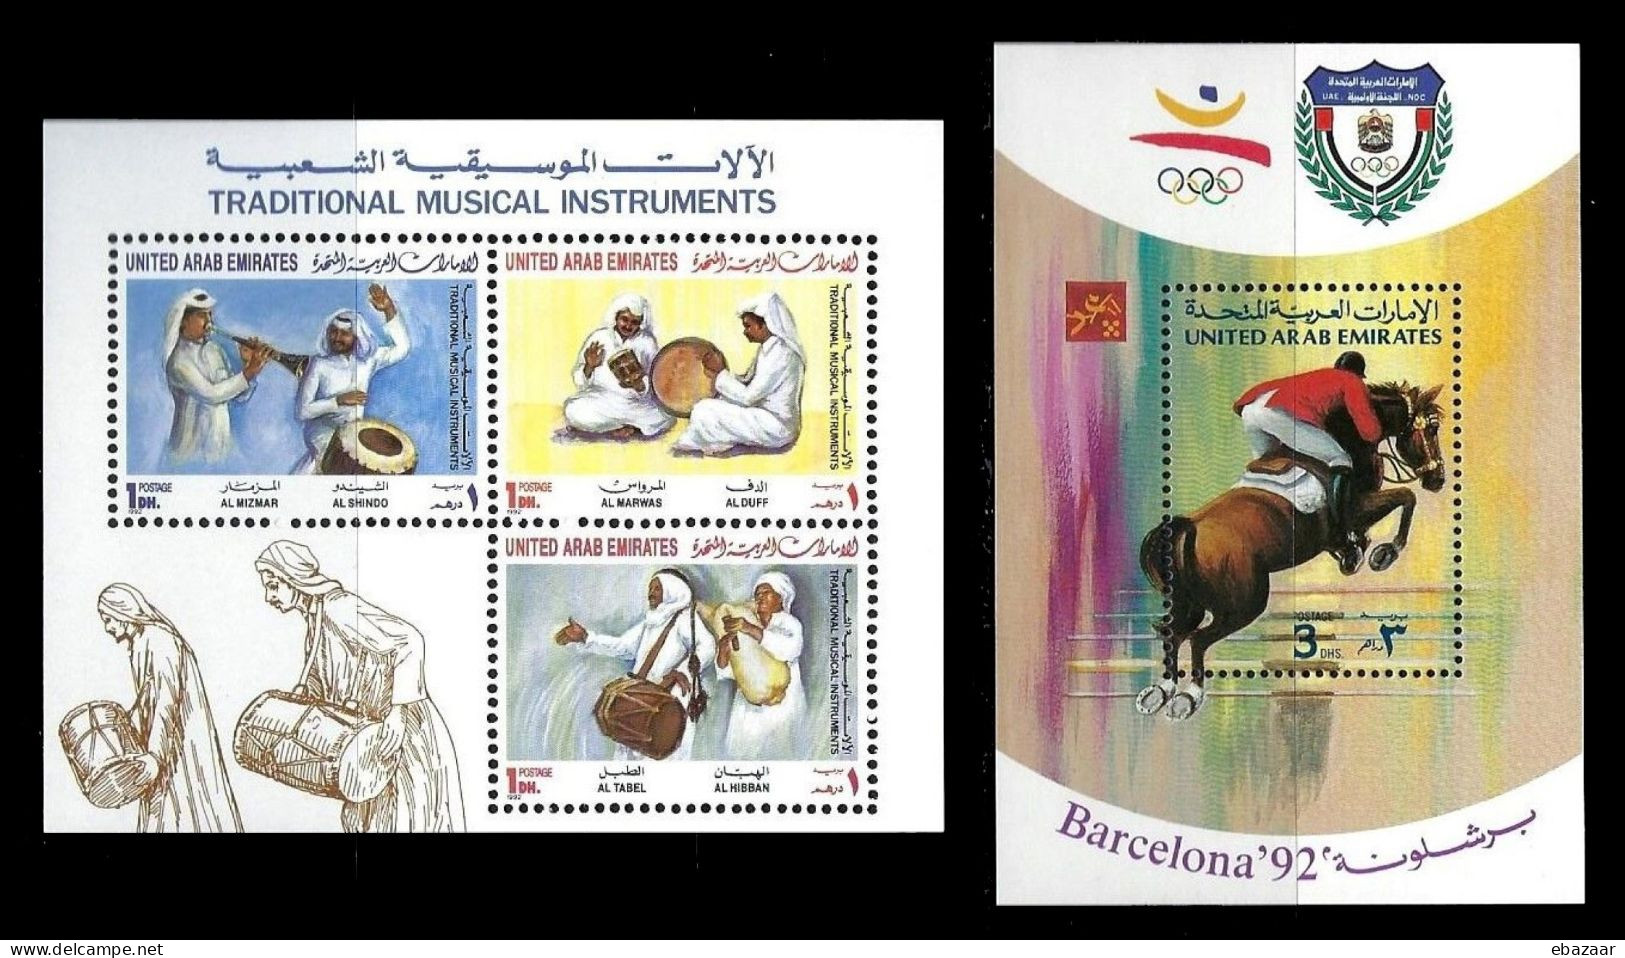 United Arab Emirates 1992 UAE Stamps MNH - Ver. Arab. Emirate